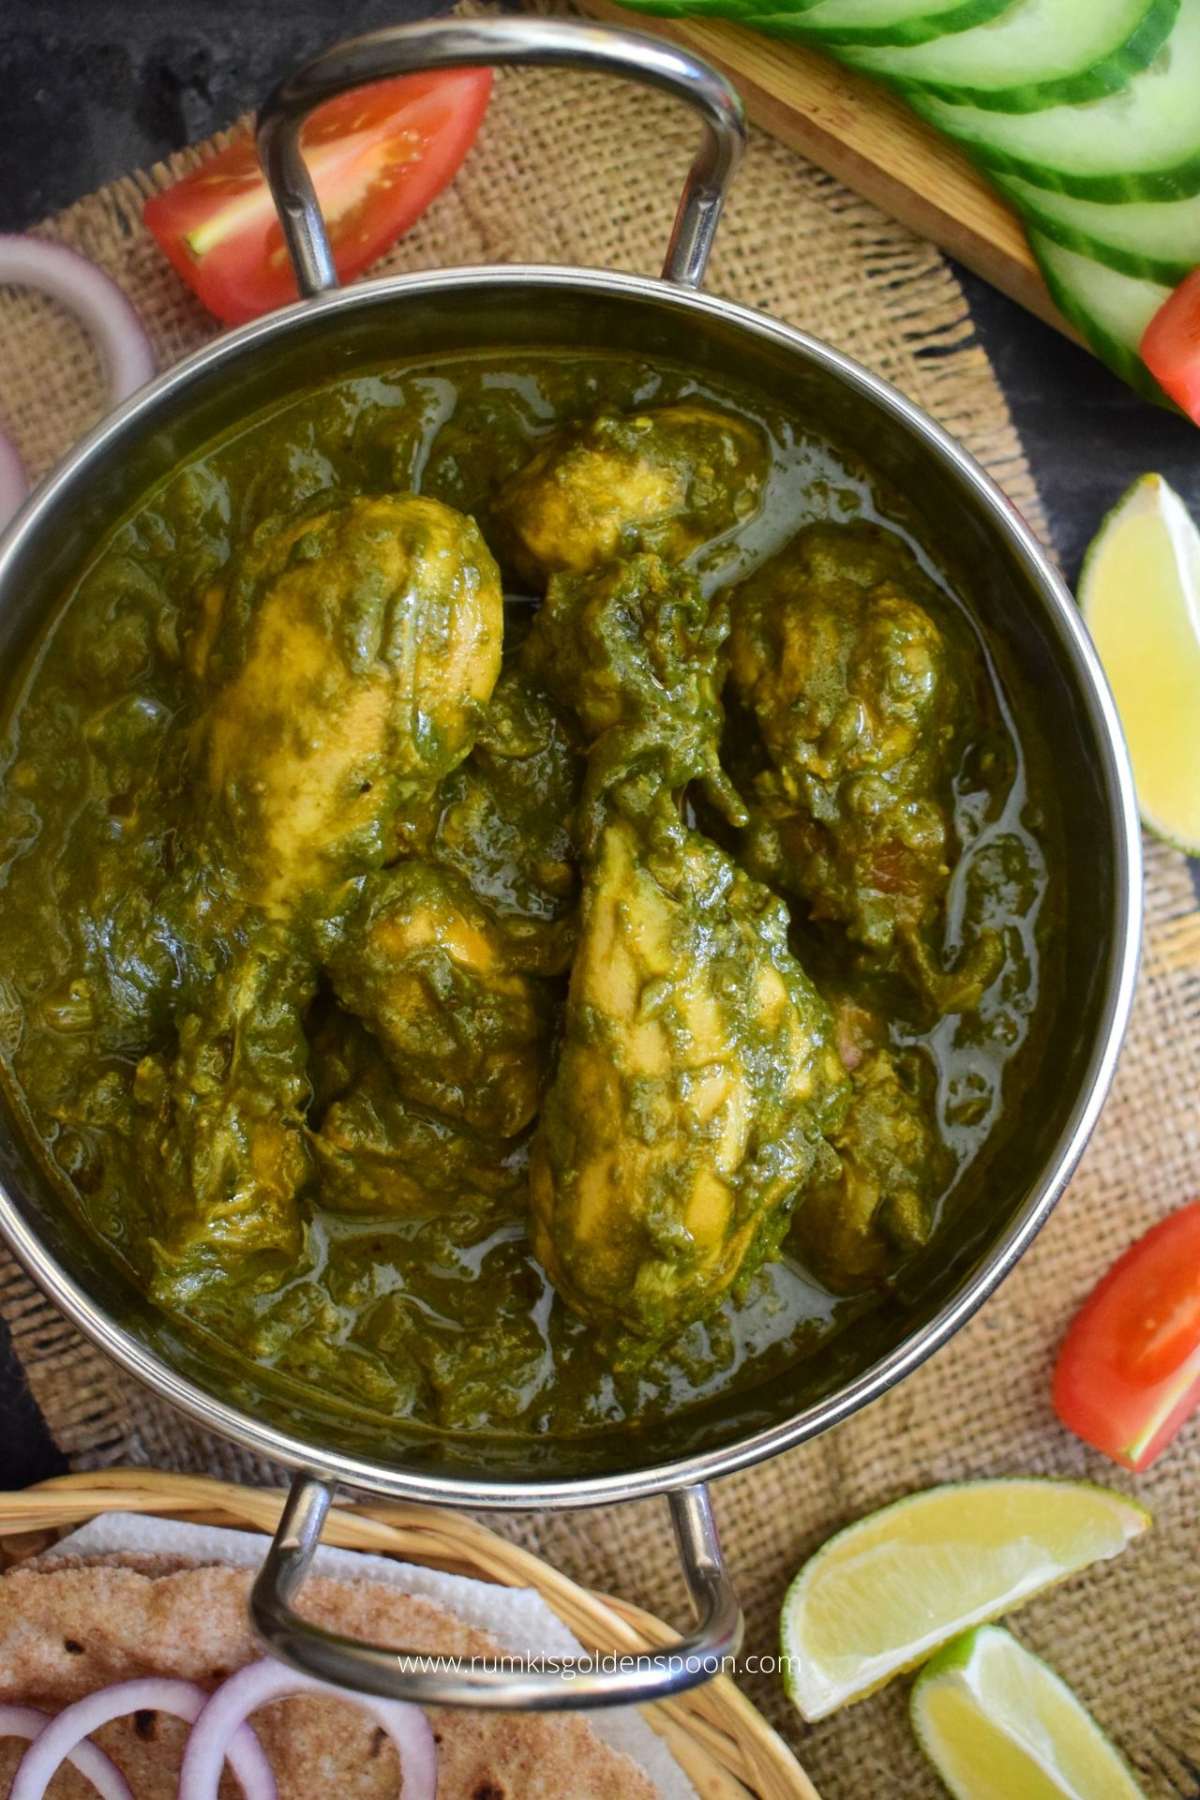 palak chicken, palak chicken recipe, recipe for palak chicken, palak chicken curry, how to make palak chicken, palak chicken gravy, palak chicken recipe pakistani, palak chicken pakistani, palak chicken curry recipe, recipe for palak chicken curry, palak chicken andhra style, palak chicken ki recipe, palak murgh, palak murgh recipe, palak murgh recipe pakistani, chicken saag, chicken saagwala, chicken saag recipe, recipe for chicken saag, chicken saag taste, recipe for chicken saag curry, how to make chicken saag curry, spinach chicken curry, chicken curry with spinach, spinach and chicken curry, spinach chicken curry indian, spinach chicken curry recipe, spinach and chicken curry recipe indian, indian chicken curry, indian chicken curry recipe, recipe for indian chicken curry, recipe for spicy chicken curry, indian chicken curry easy, indian chicken curry recipe easy, indian chicken curry spicy, Rumki's Golden Spoon